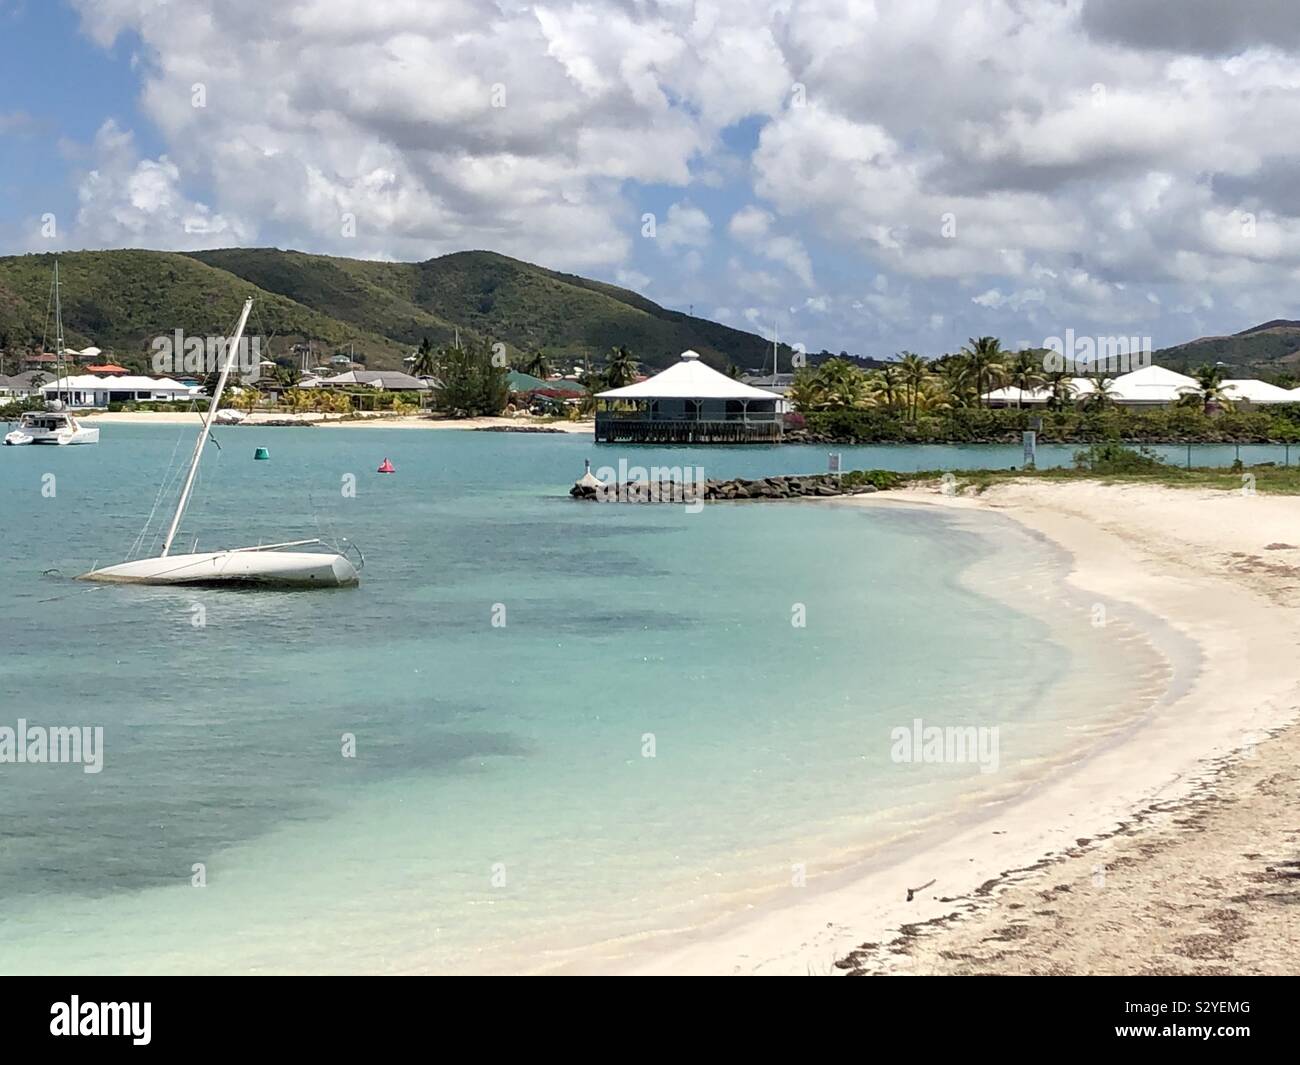 Sunken boat in the Caribbean Stock Photo